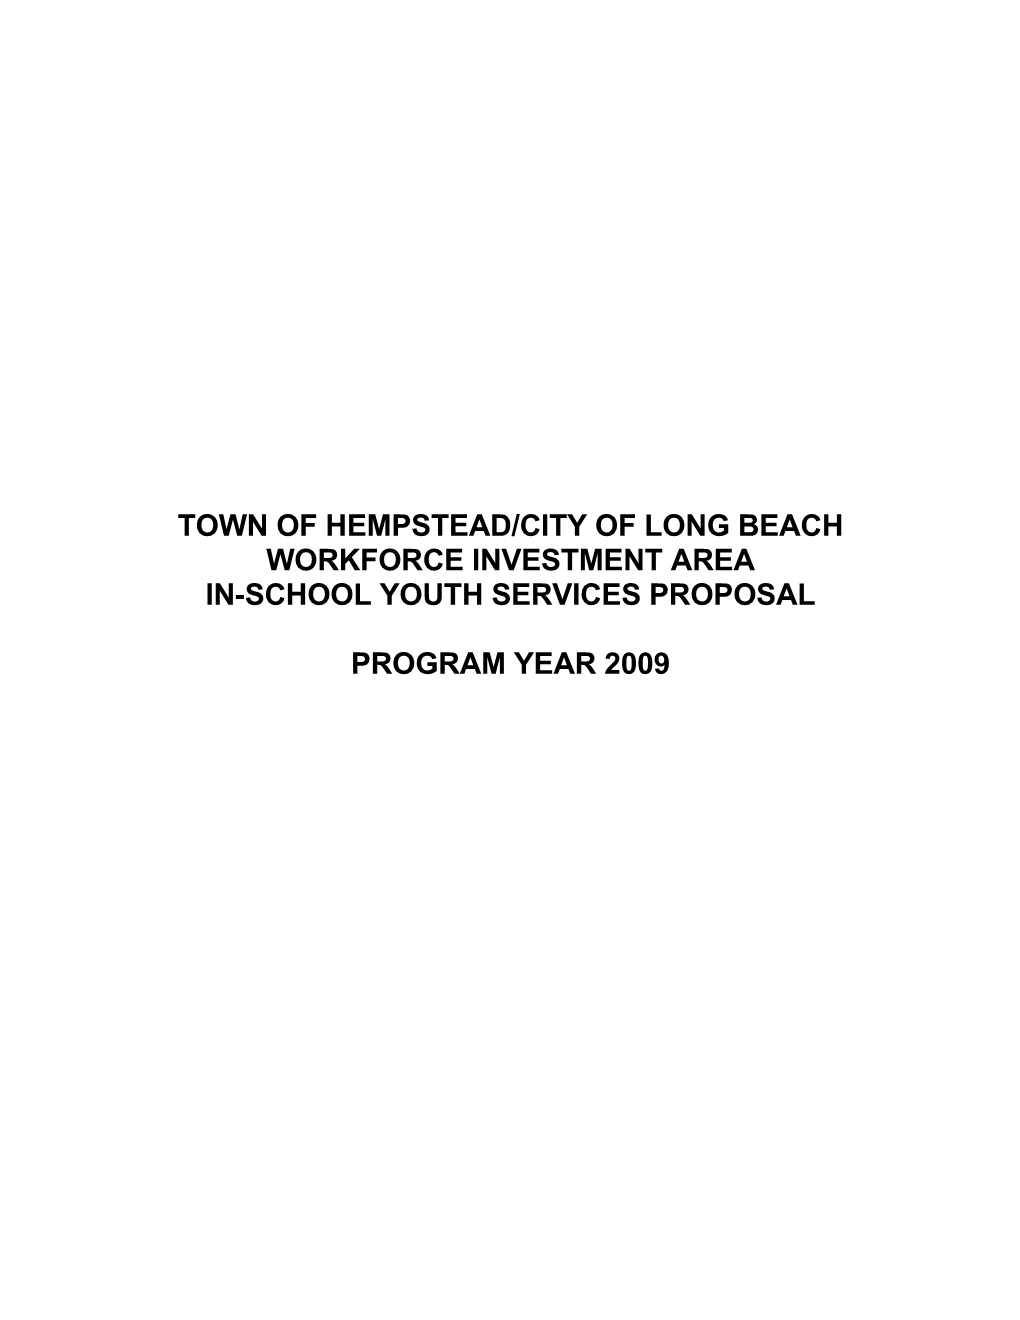 Town of Hempstead/City of Long Beach s1